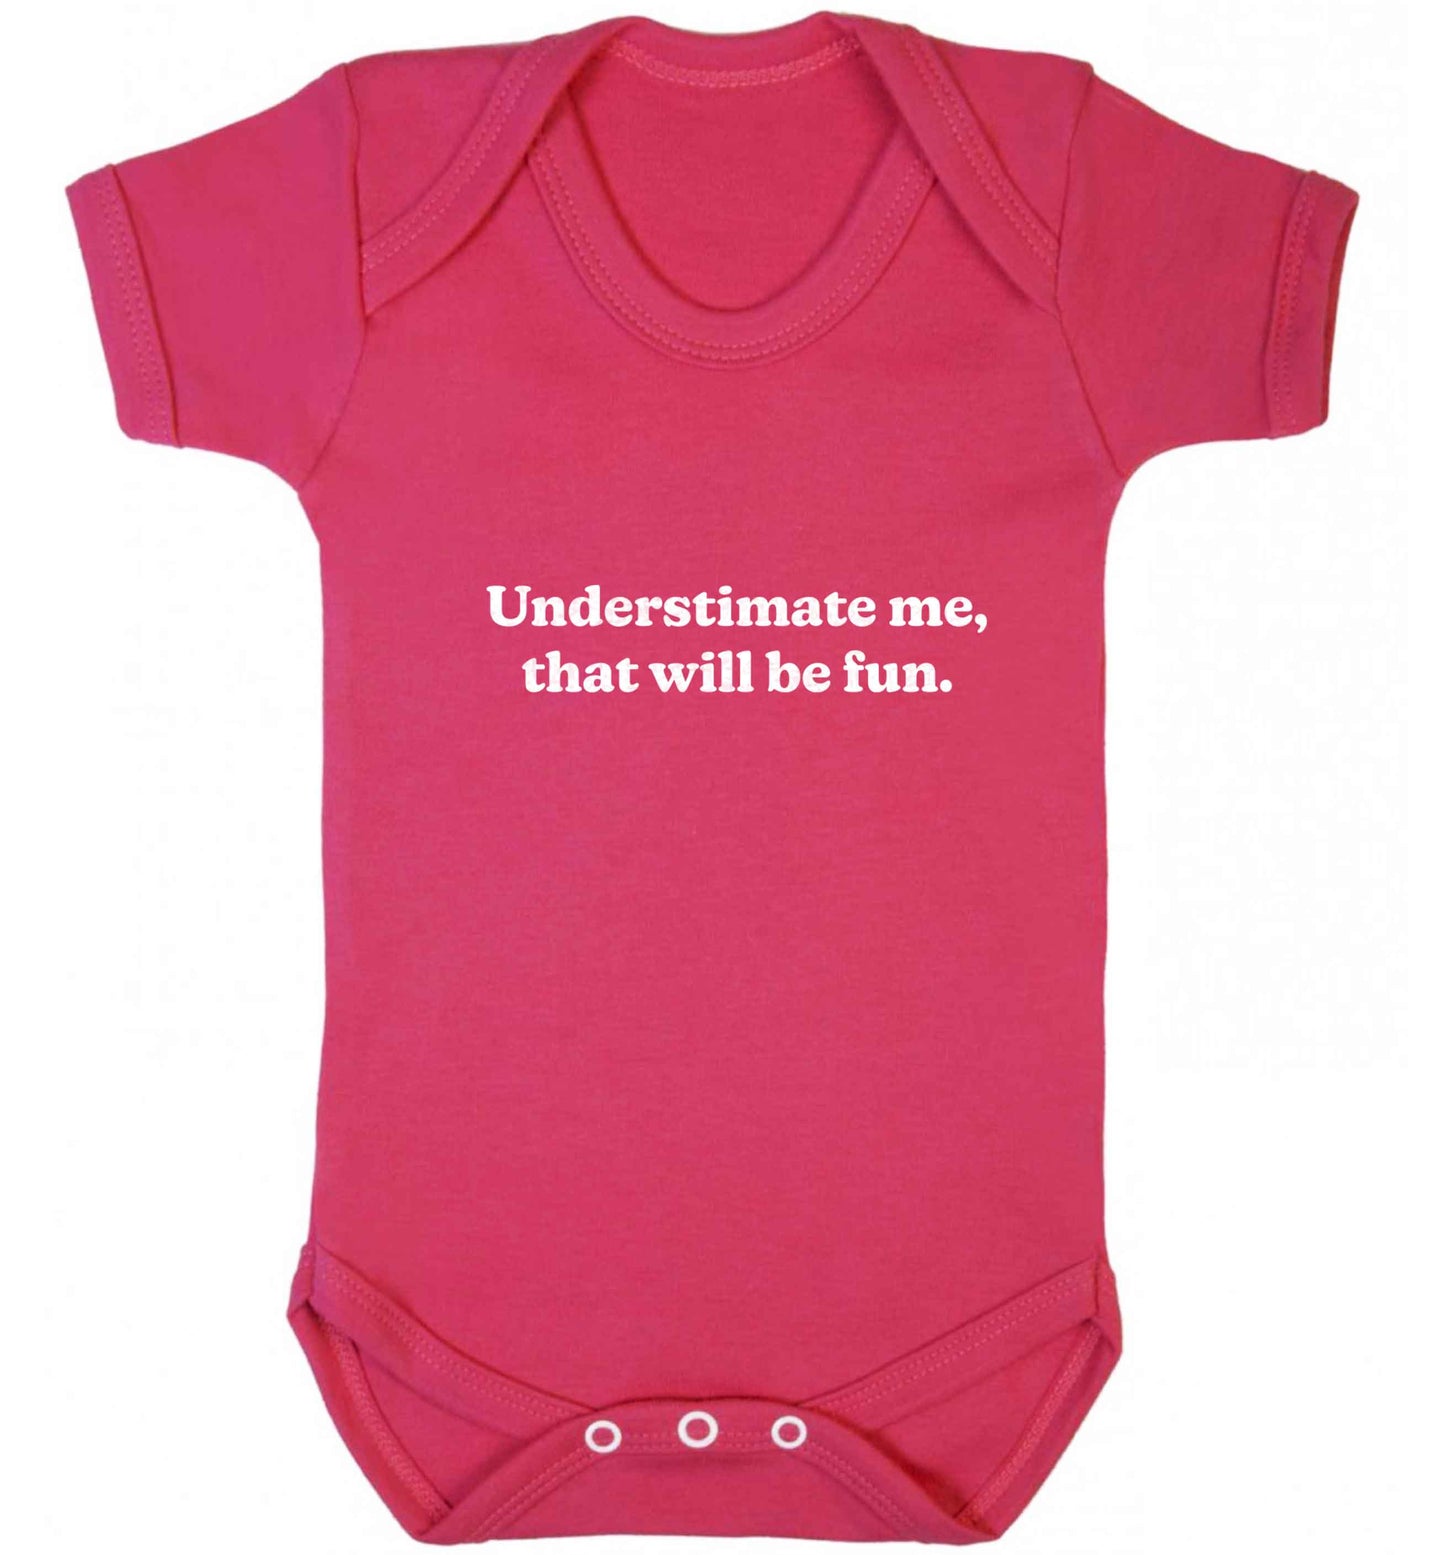 Underestimate me that will be fun baby vest dark pink 18-24 months